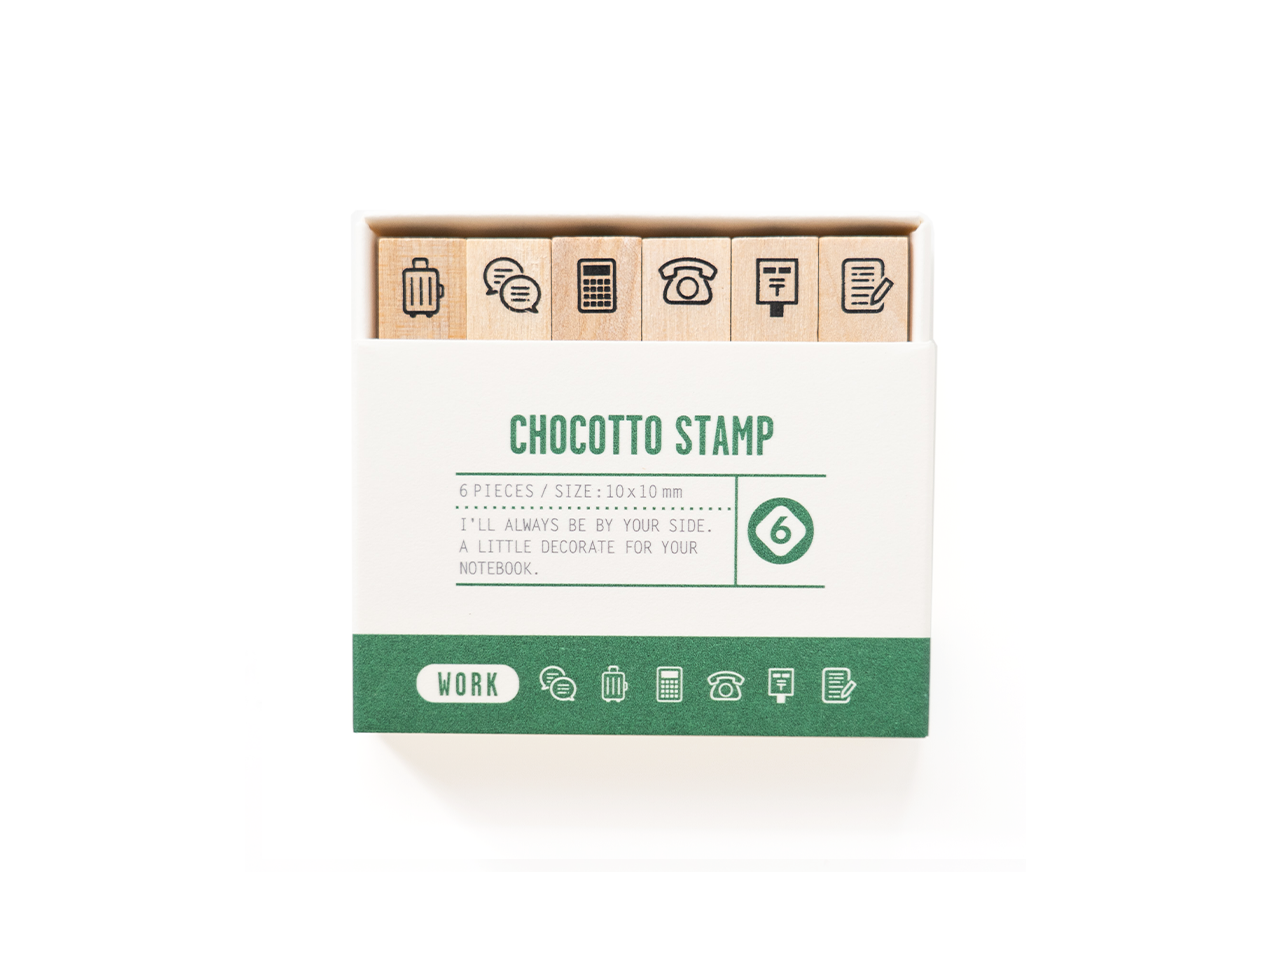 CHOCOTTO STAMP - Chocotto Stamp -